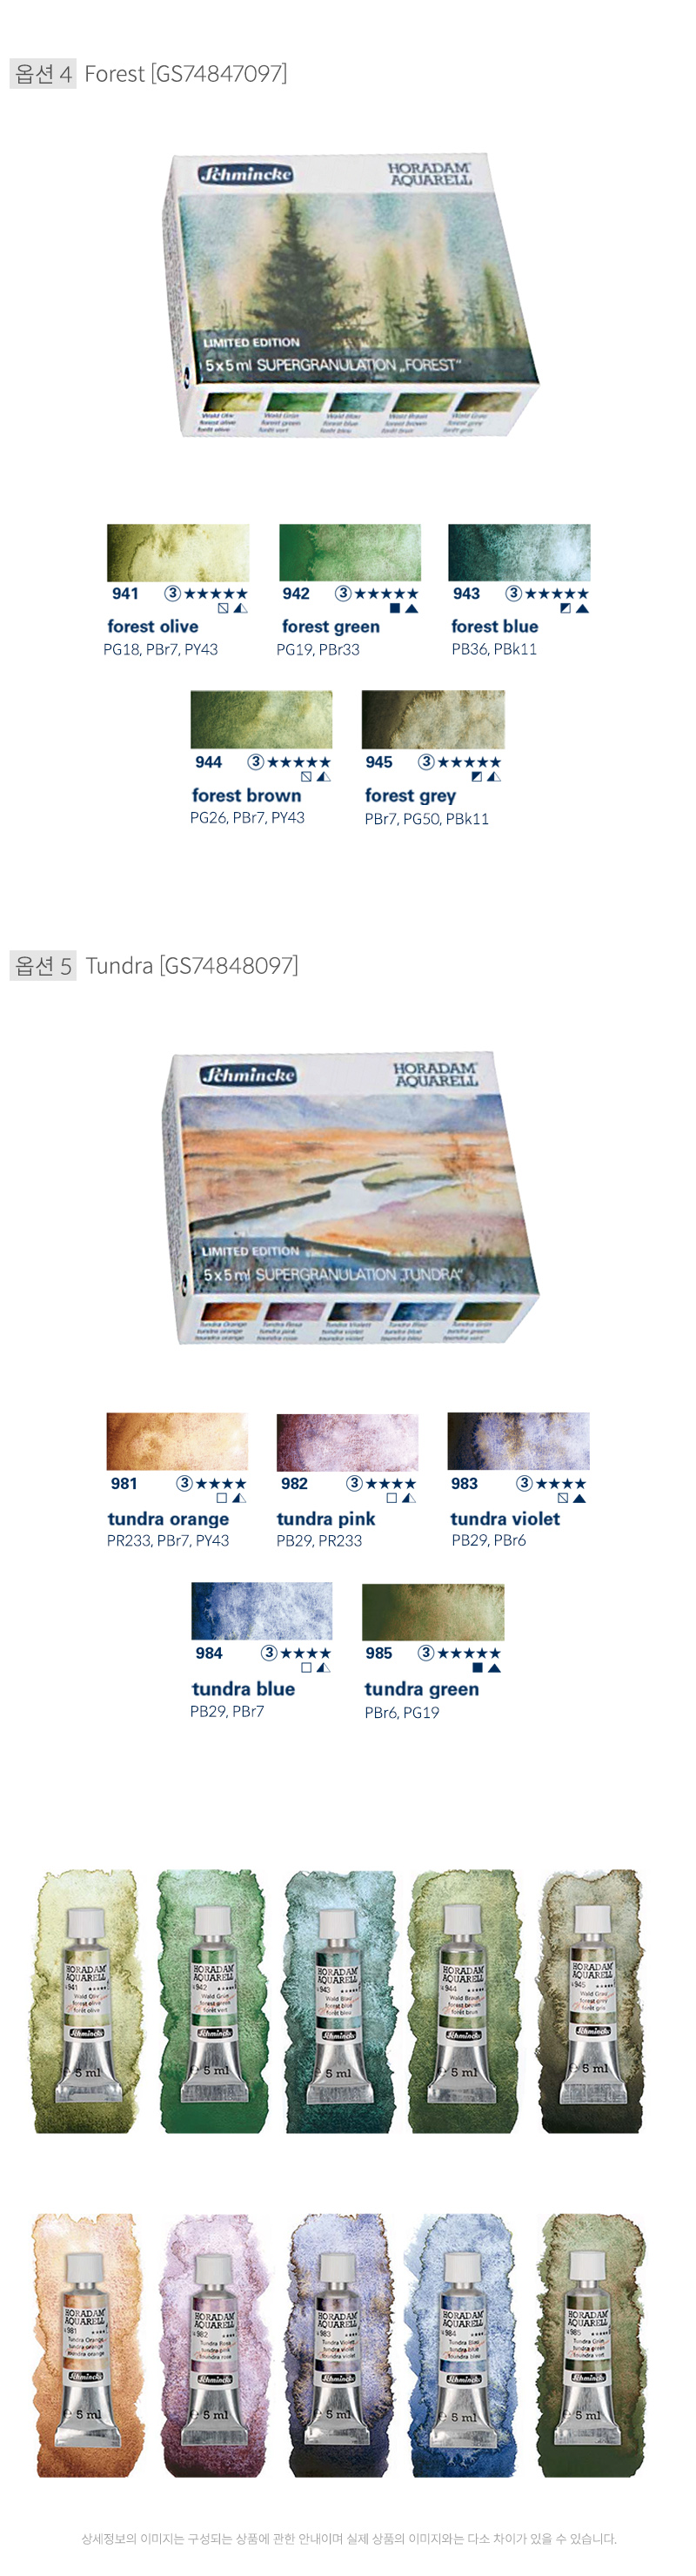 쉬민케 호라담 수채화물감 5ml 5색 Granulation Set 상품 이미지 및 발색표, 낱색 이미지